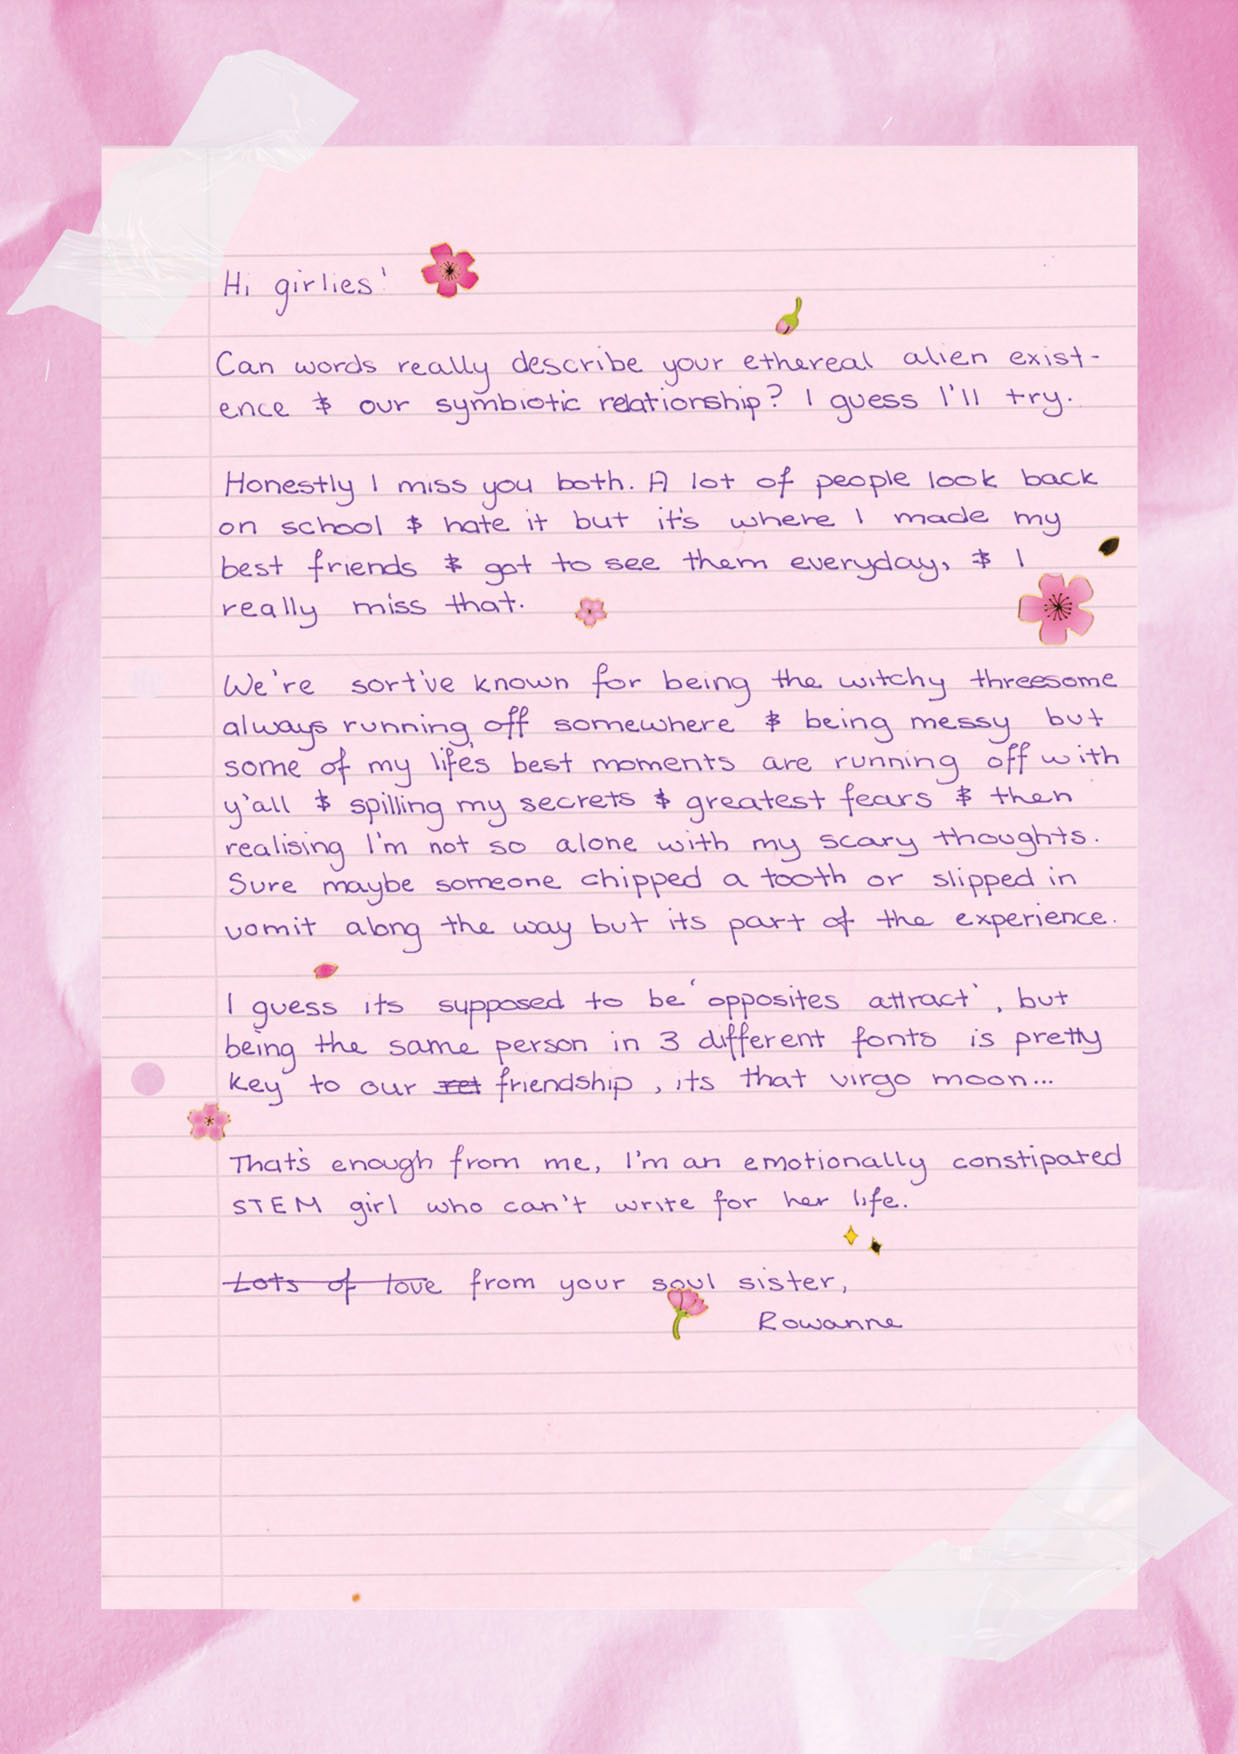 Rowanne's letter